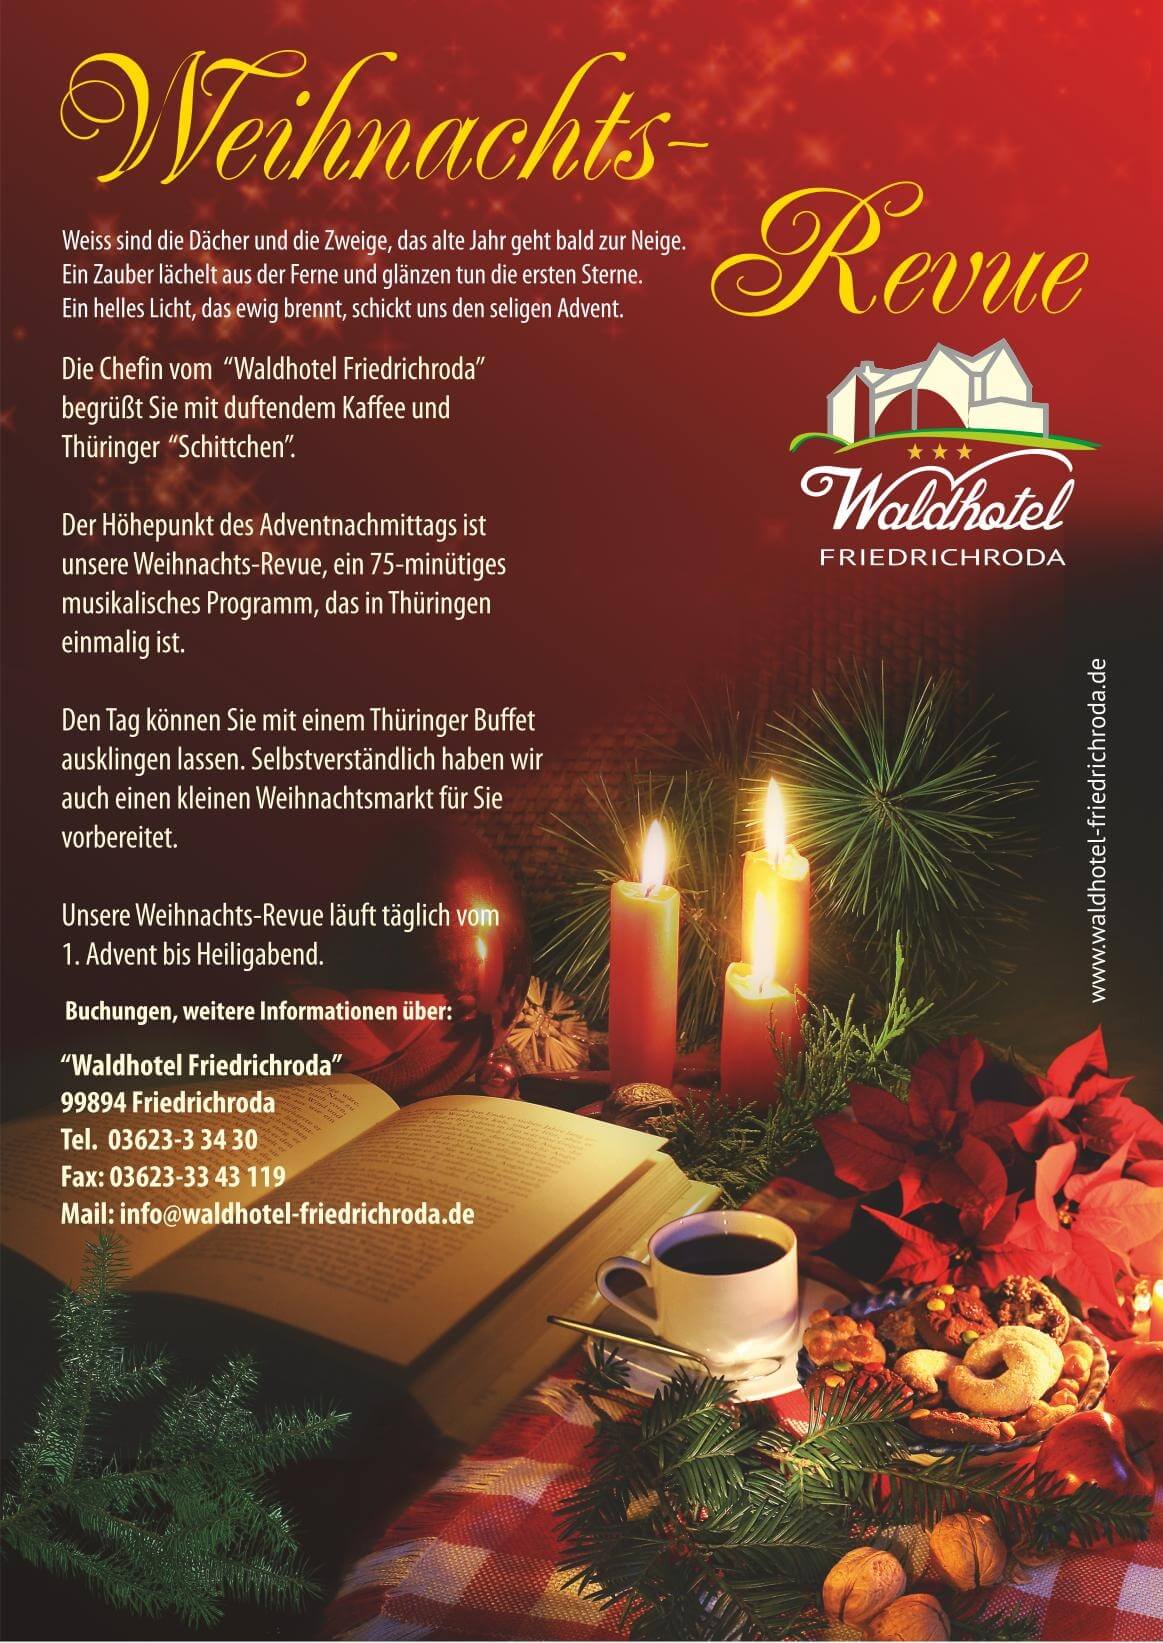 Weihnachts-Revue im Waldhotel Friedrichroda